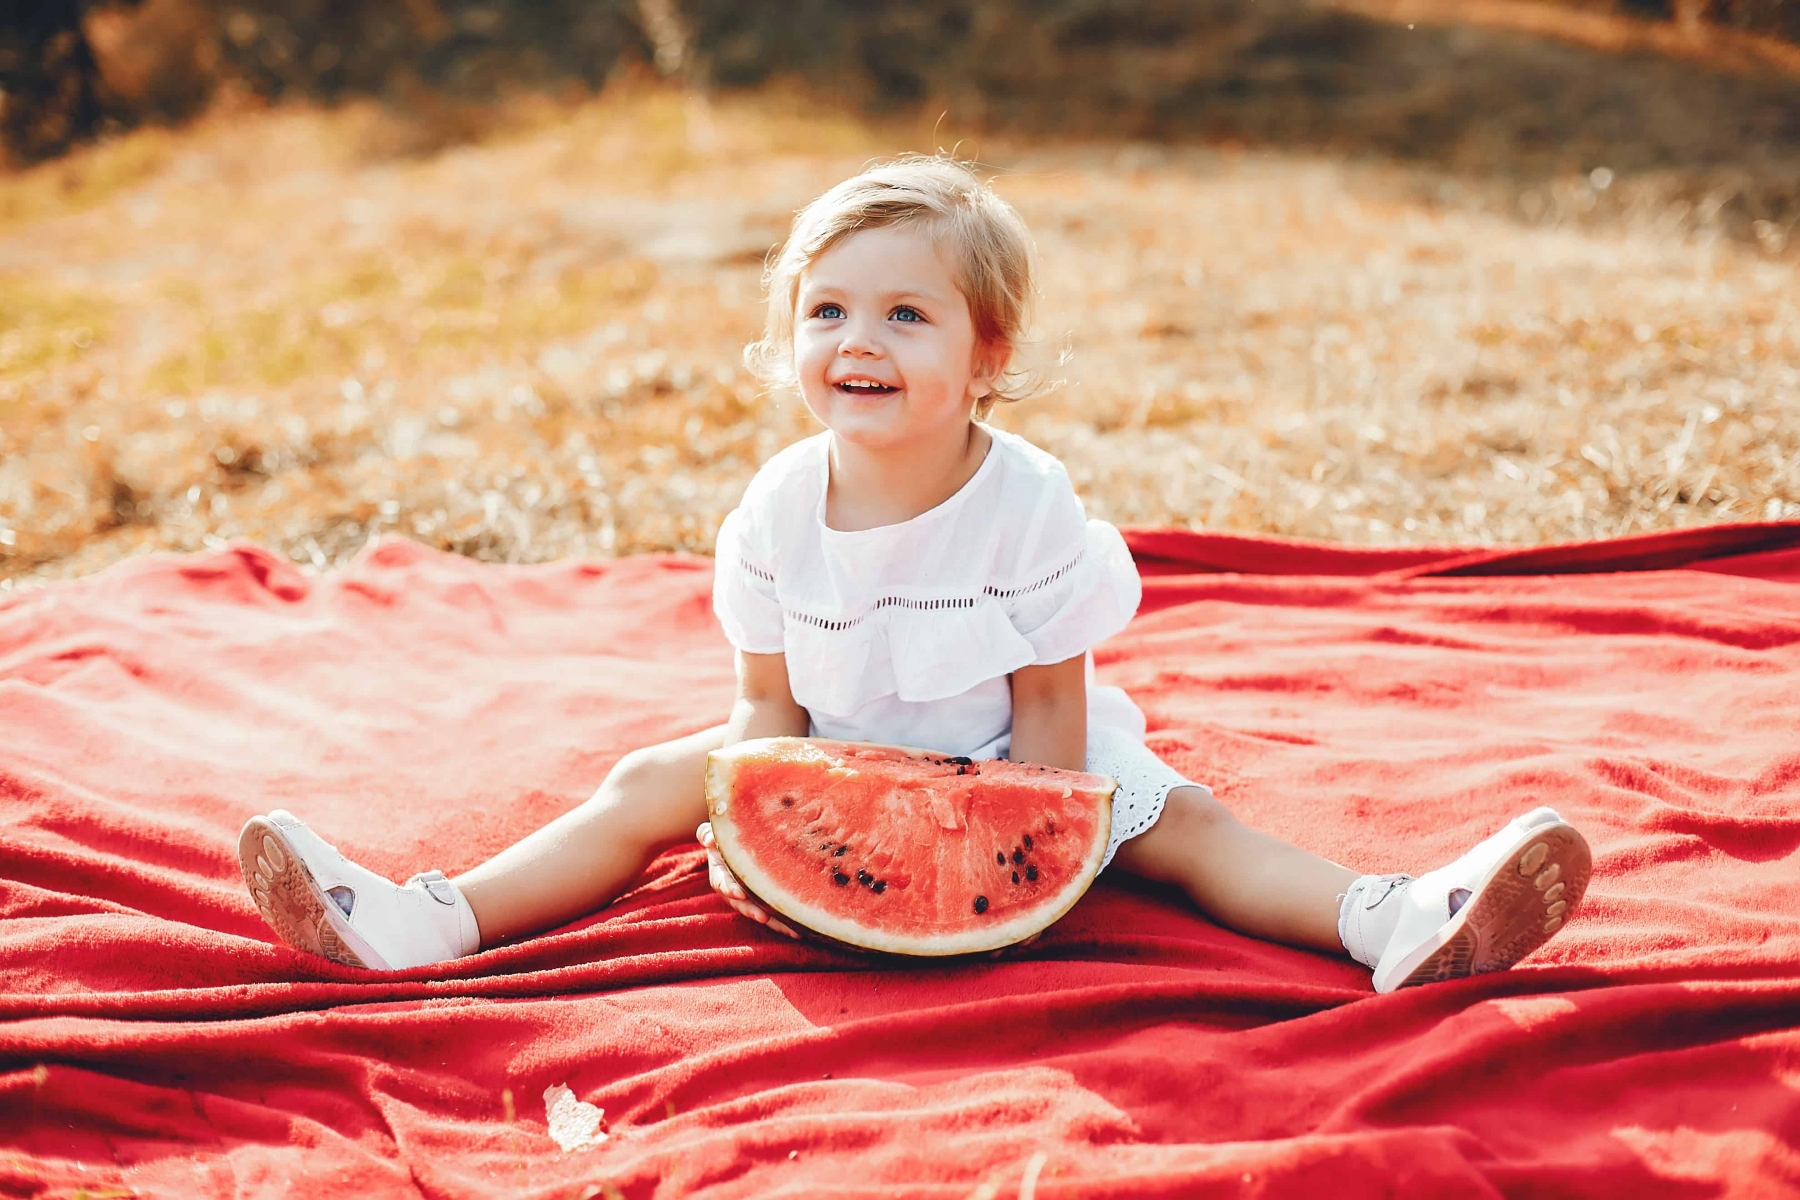 Παιδική διατροφή καλοκαίρι: Tips για θρεπτικό φαγητό και σωστή ενυδάτωση